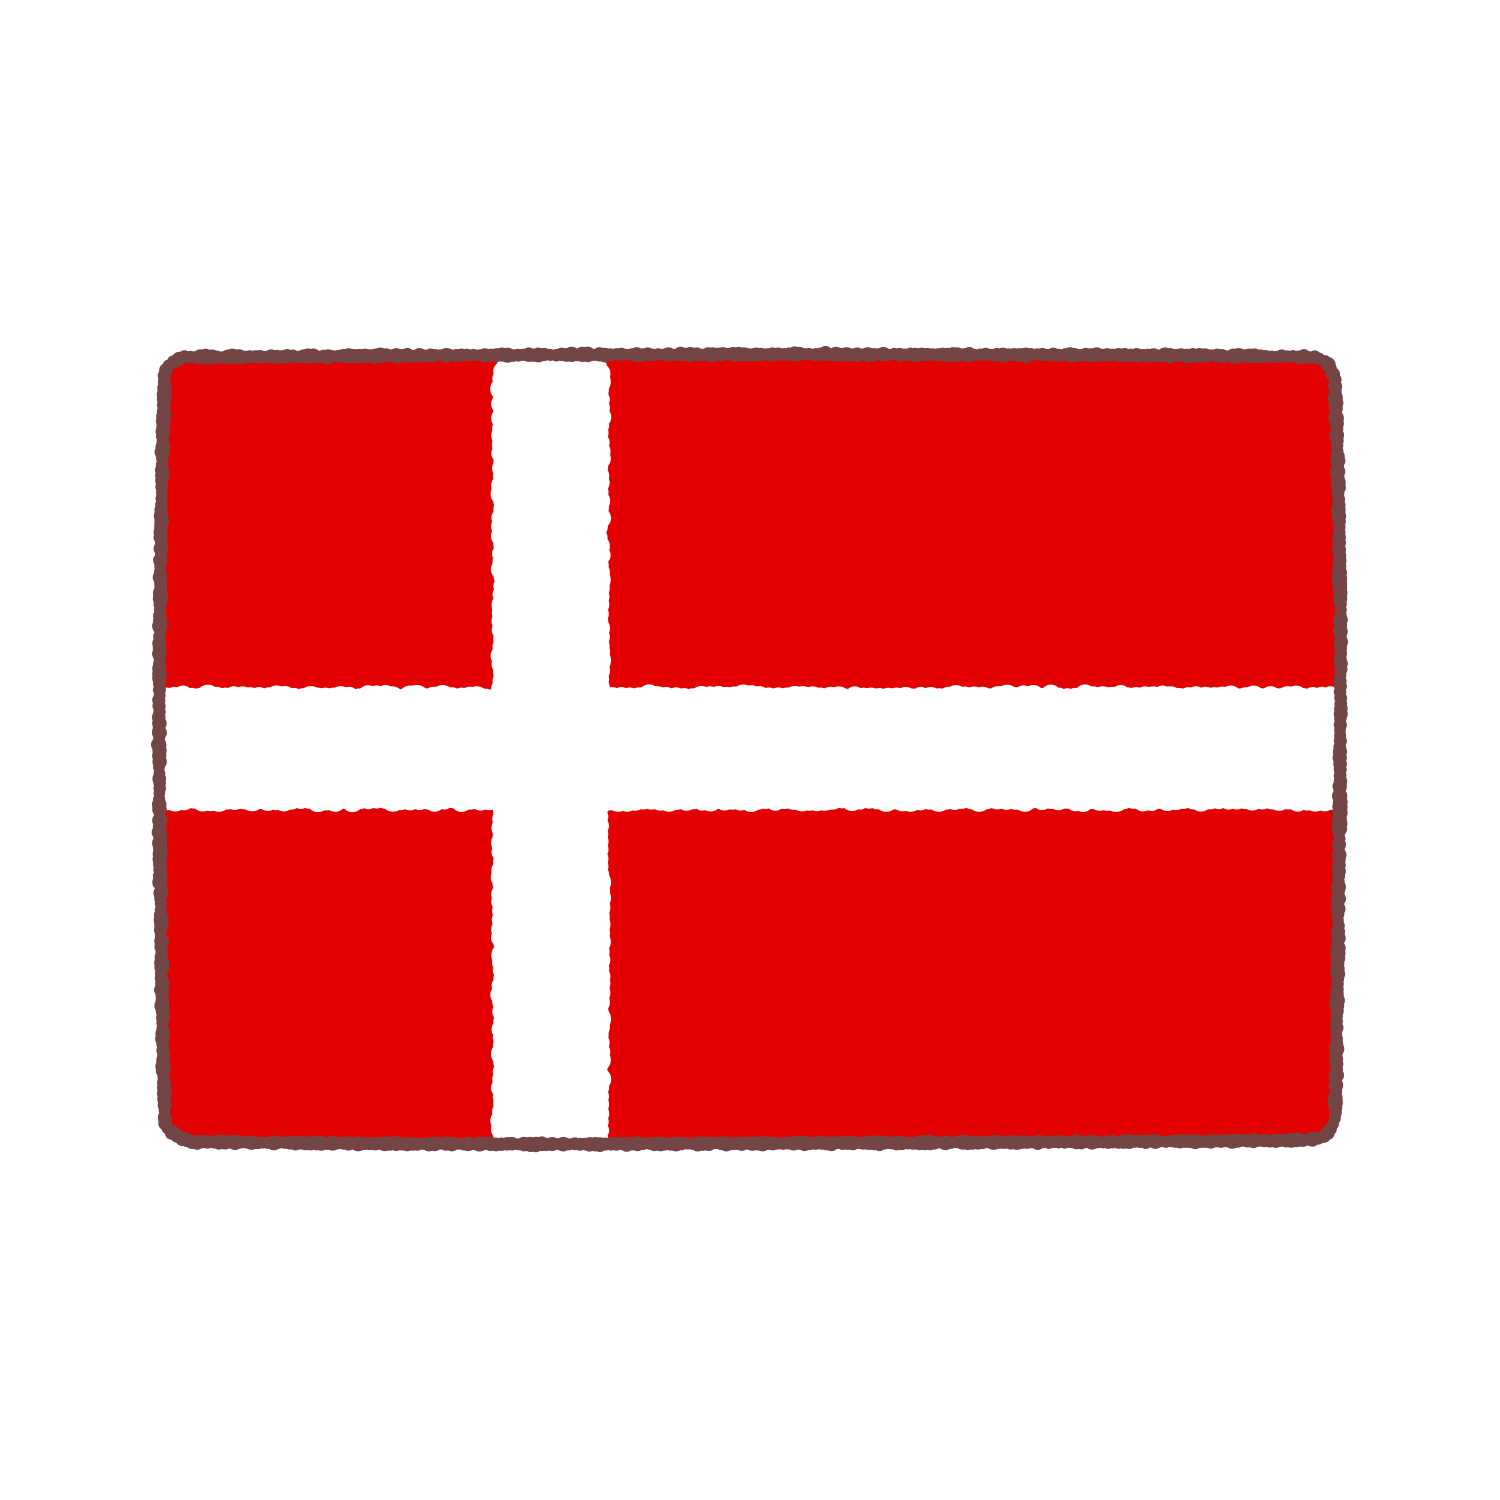 デンマーク国旗のイラスト